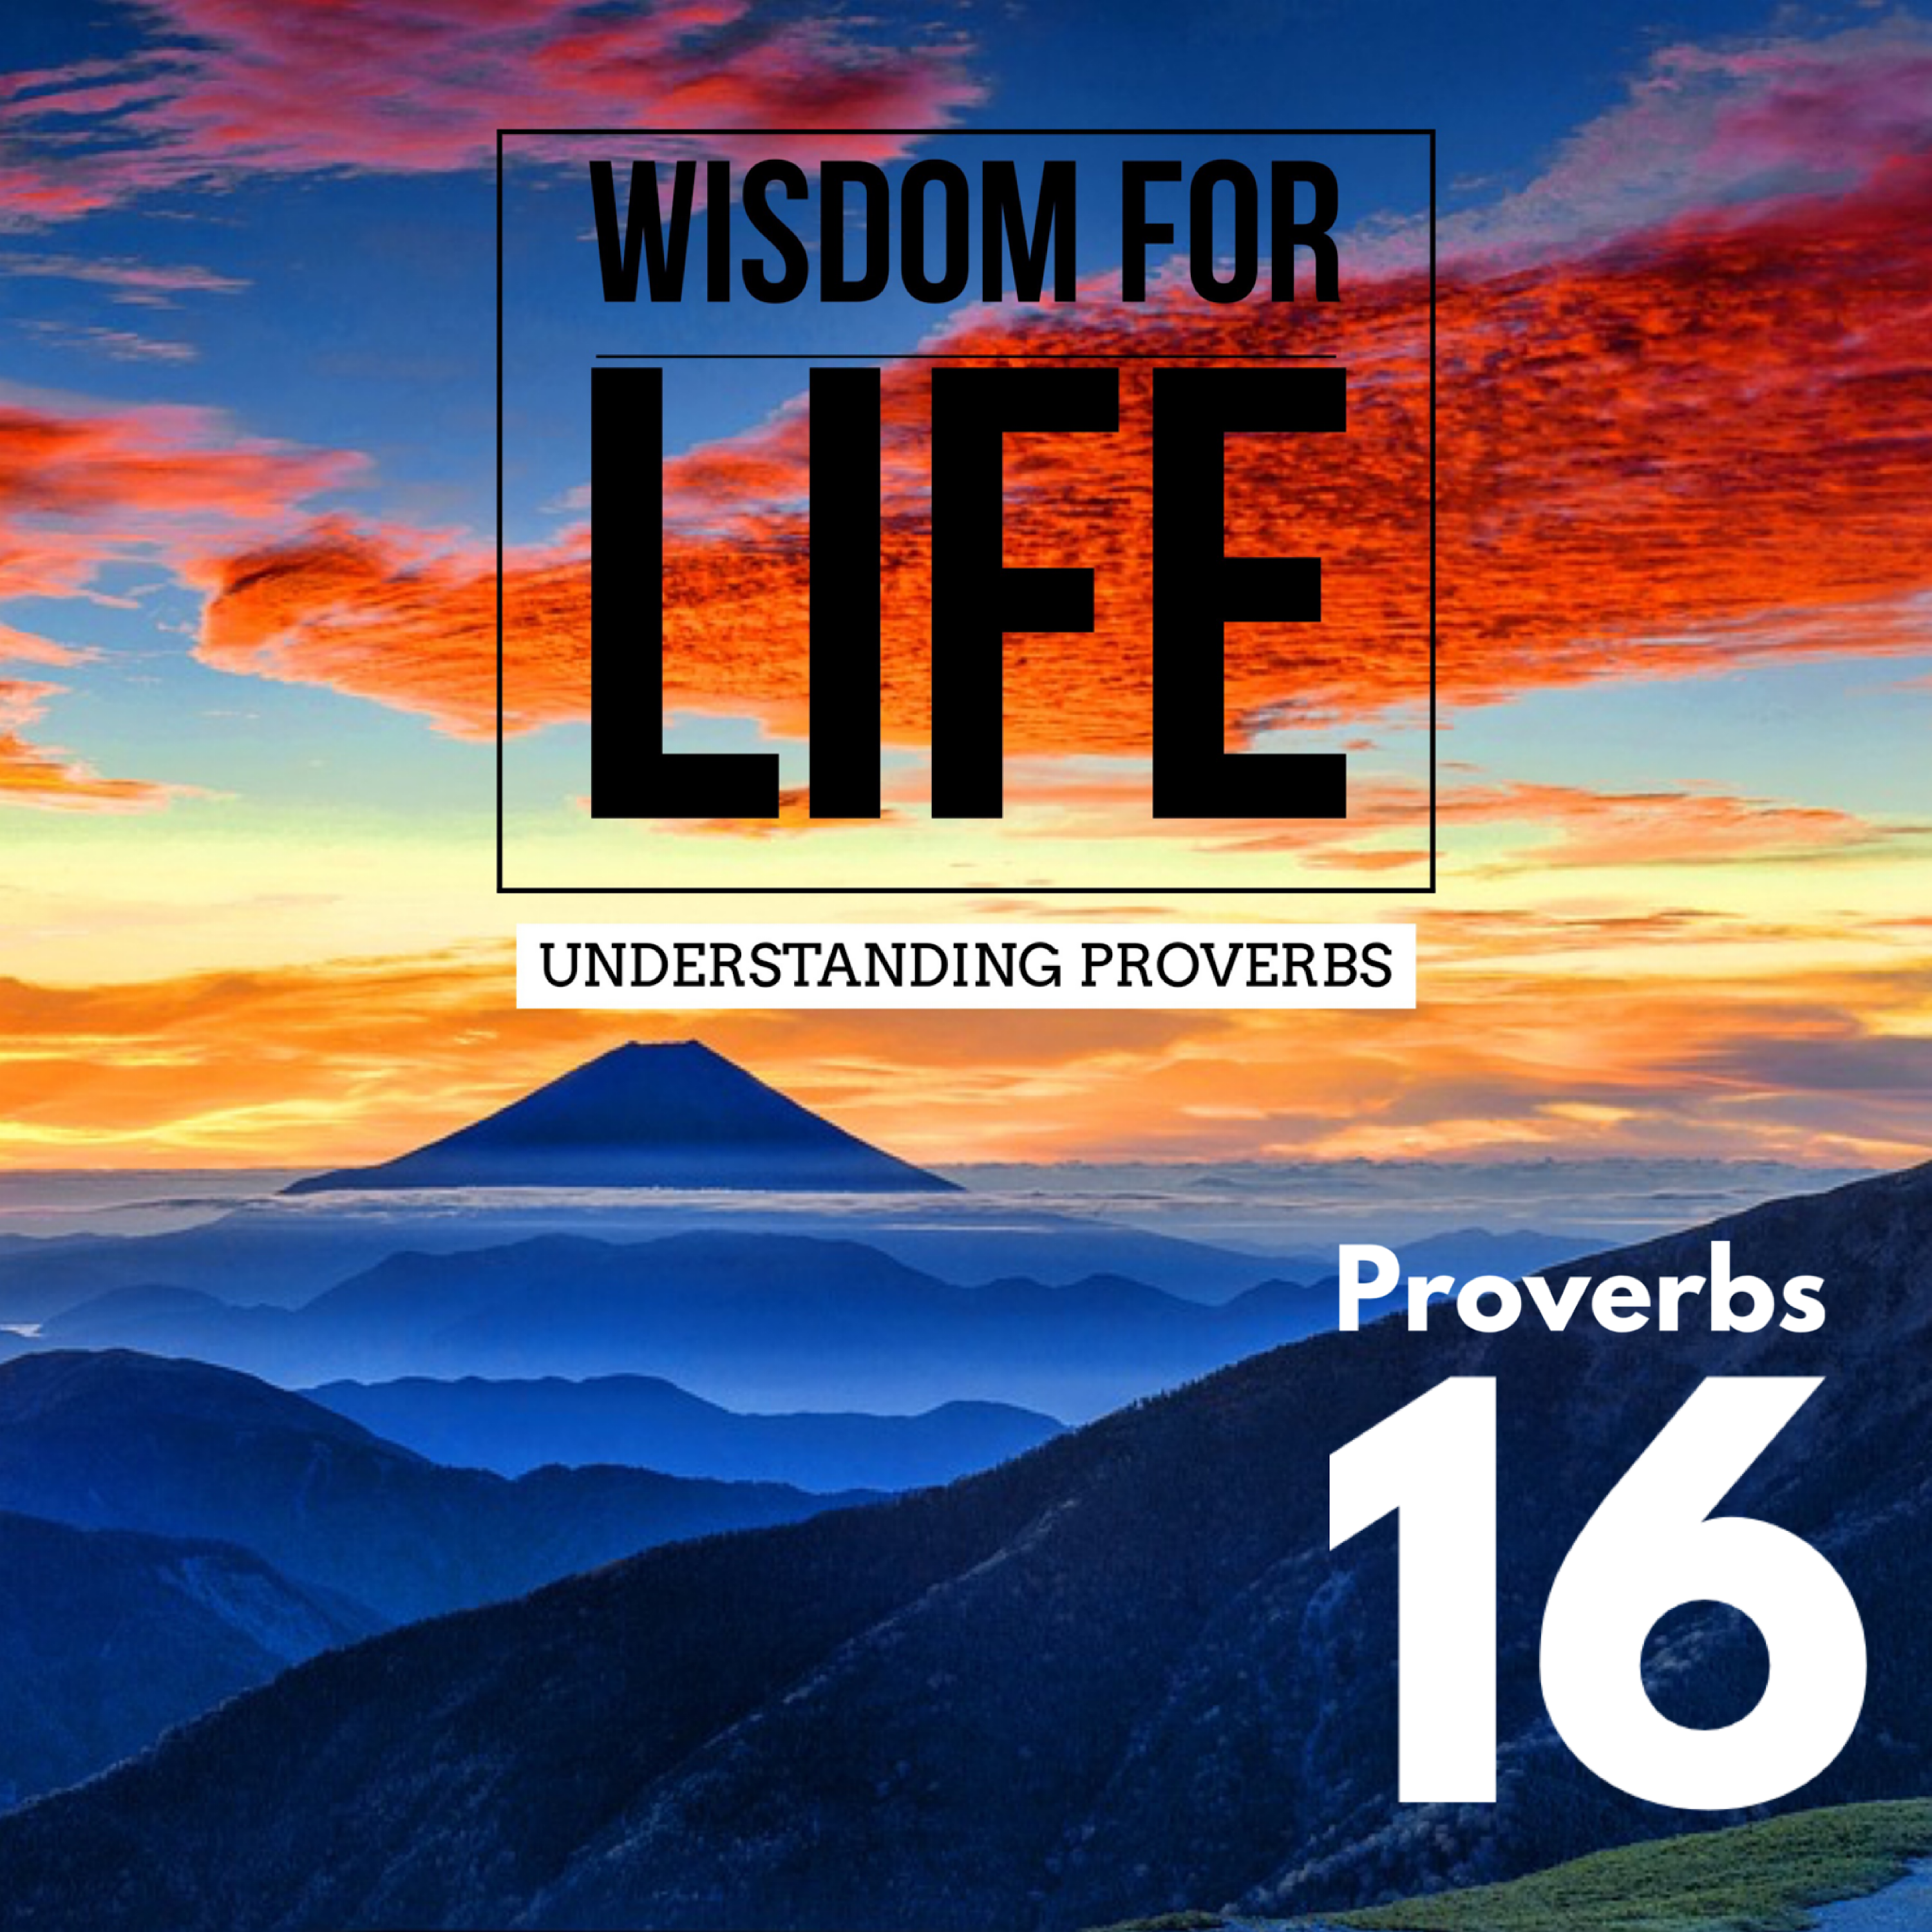 UNDERSTANDING PROVERBS 16